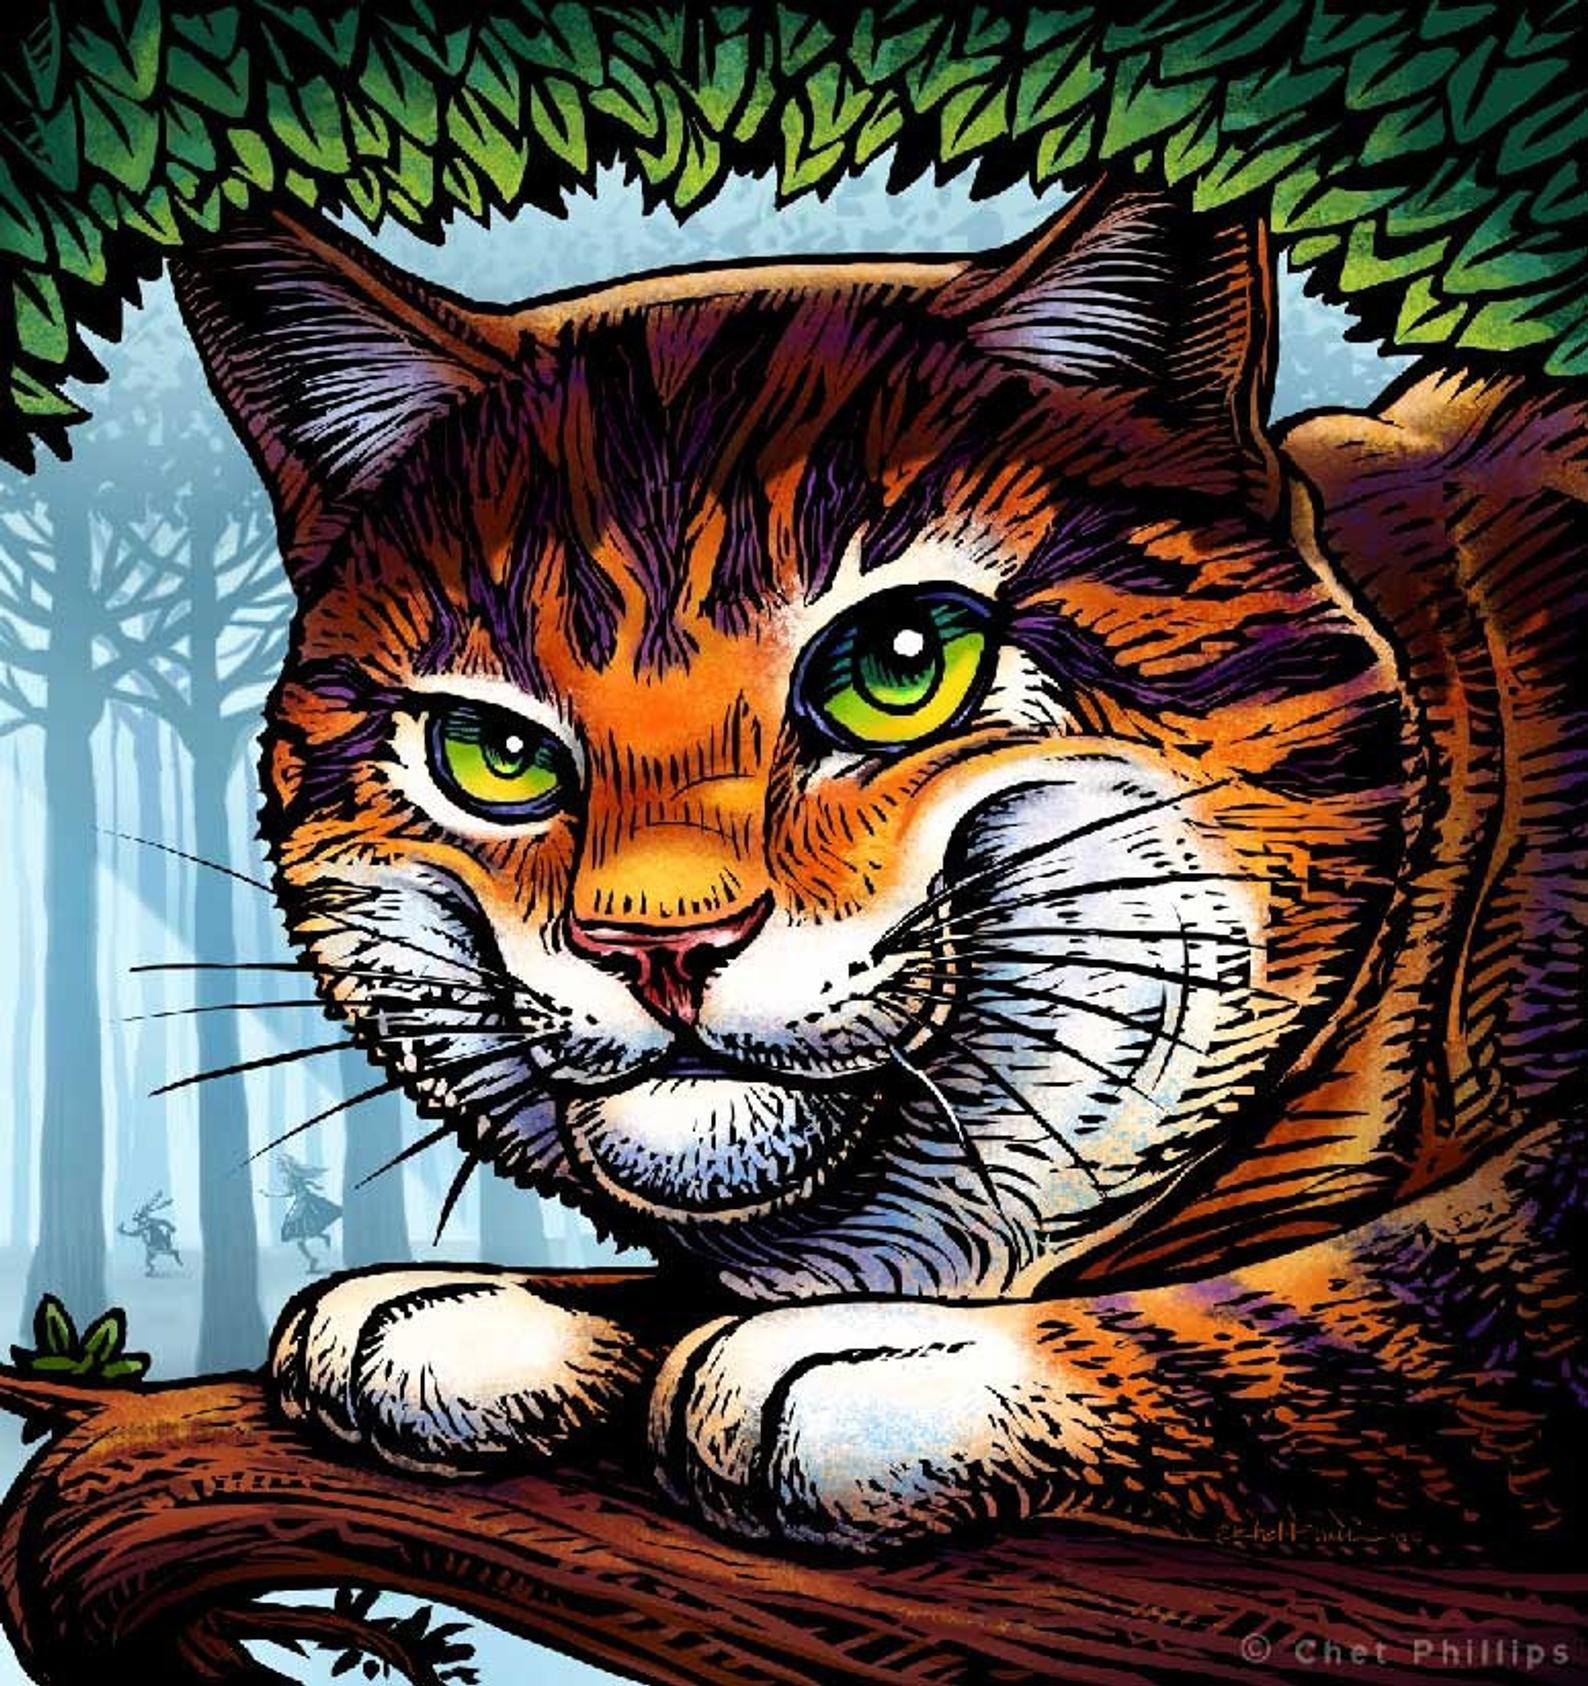 Cheshire Cat 8 x 10" print